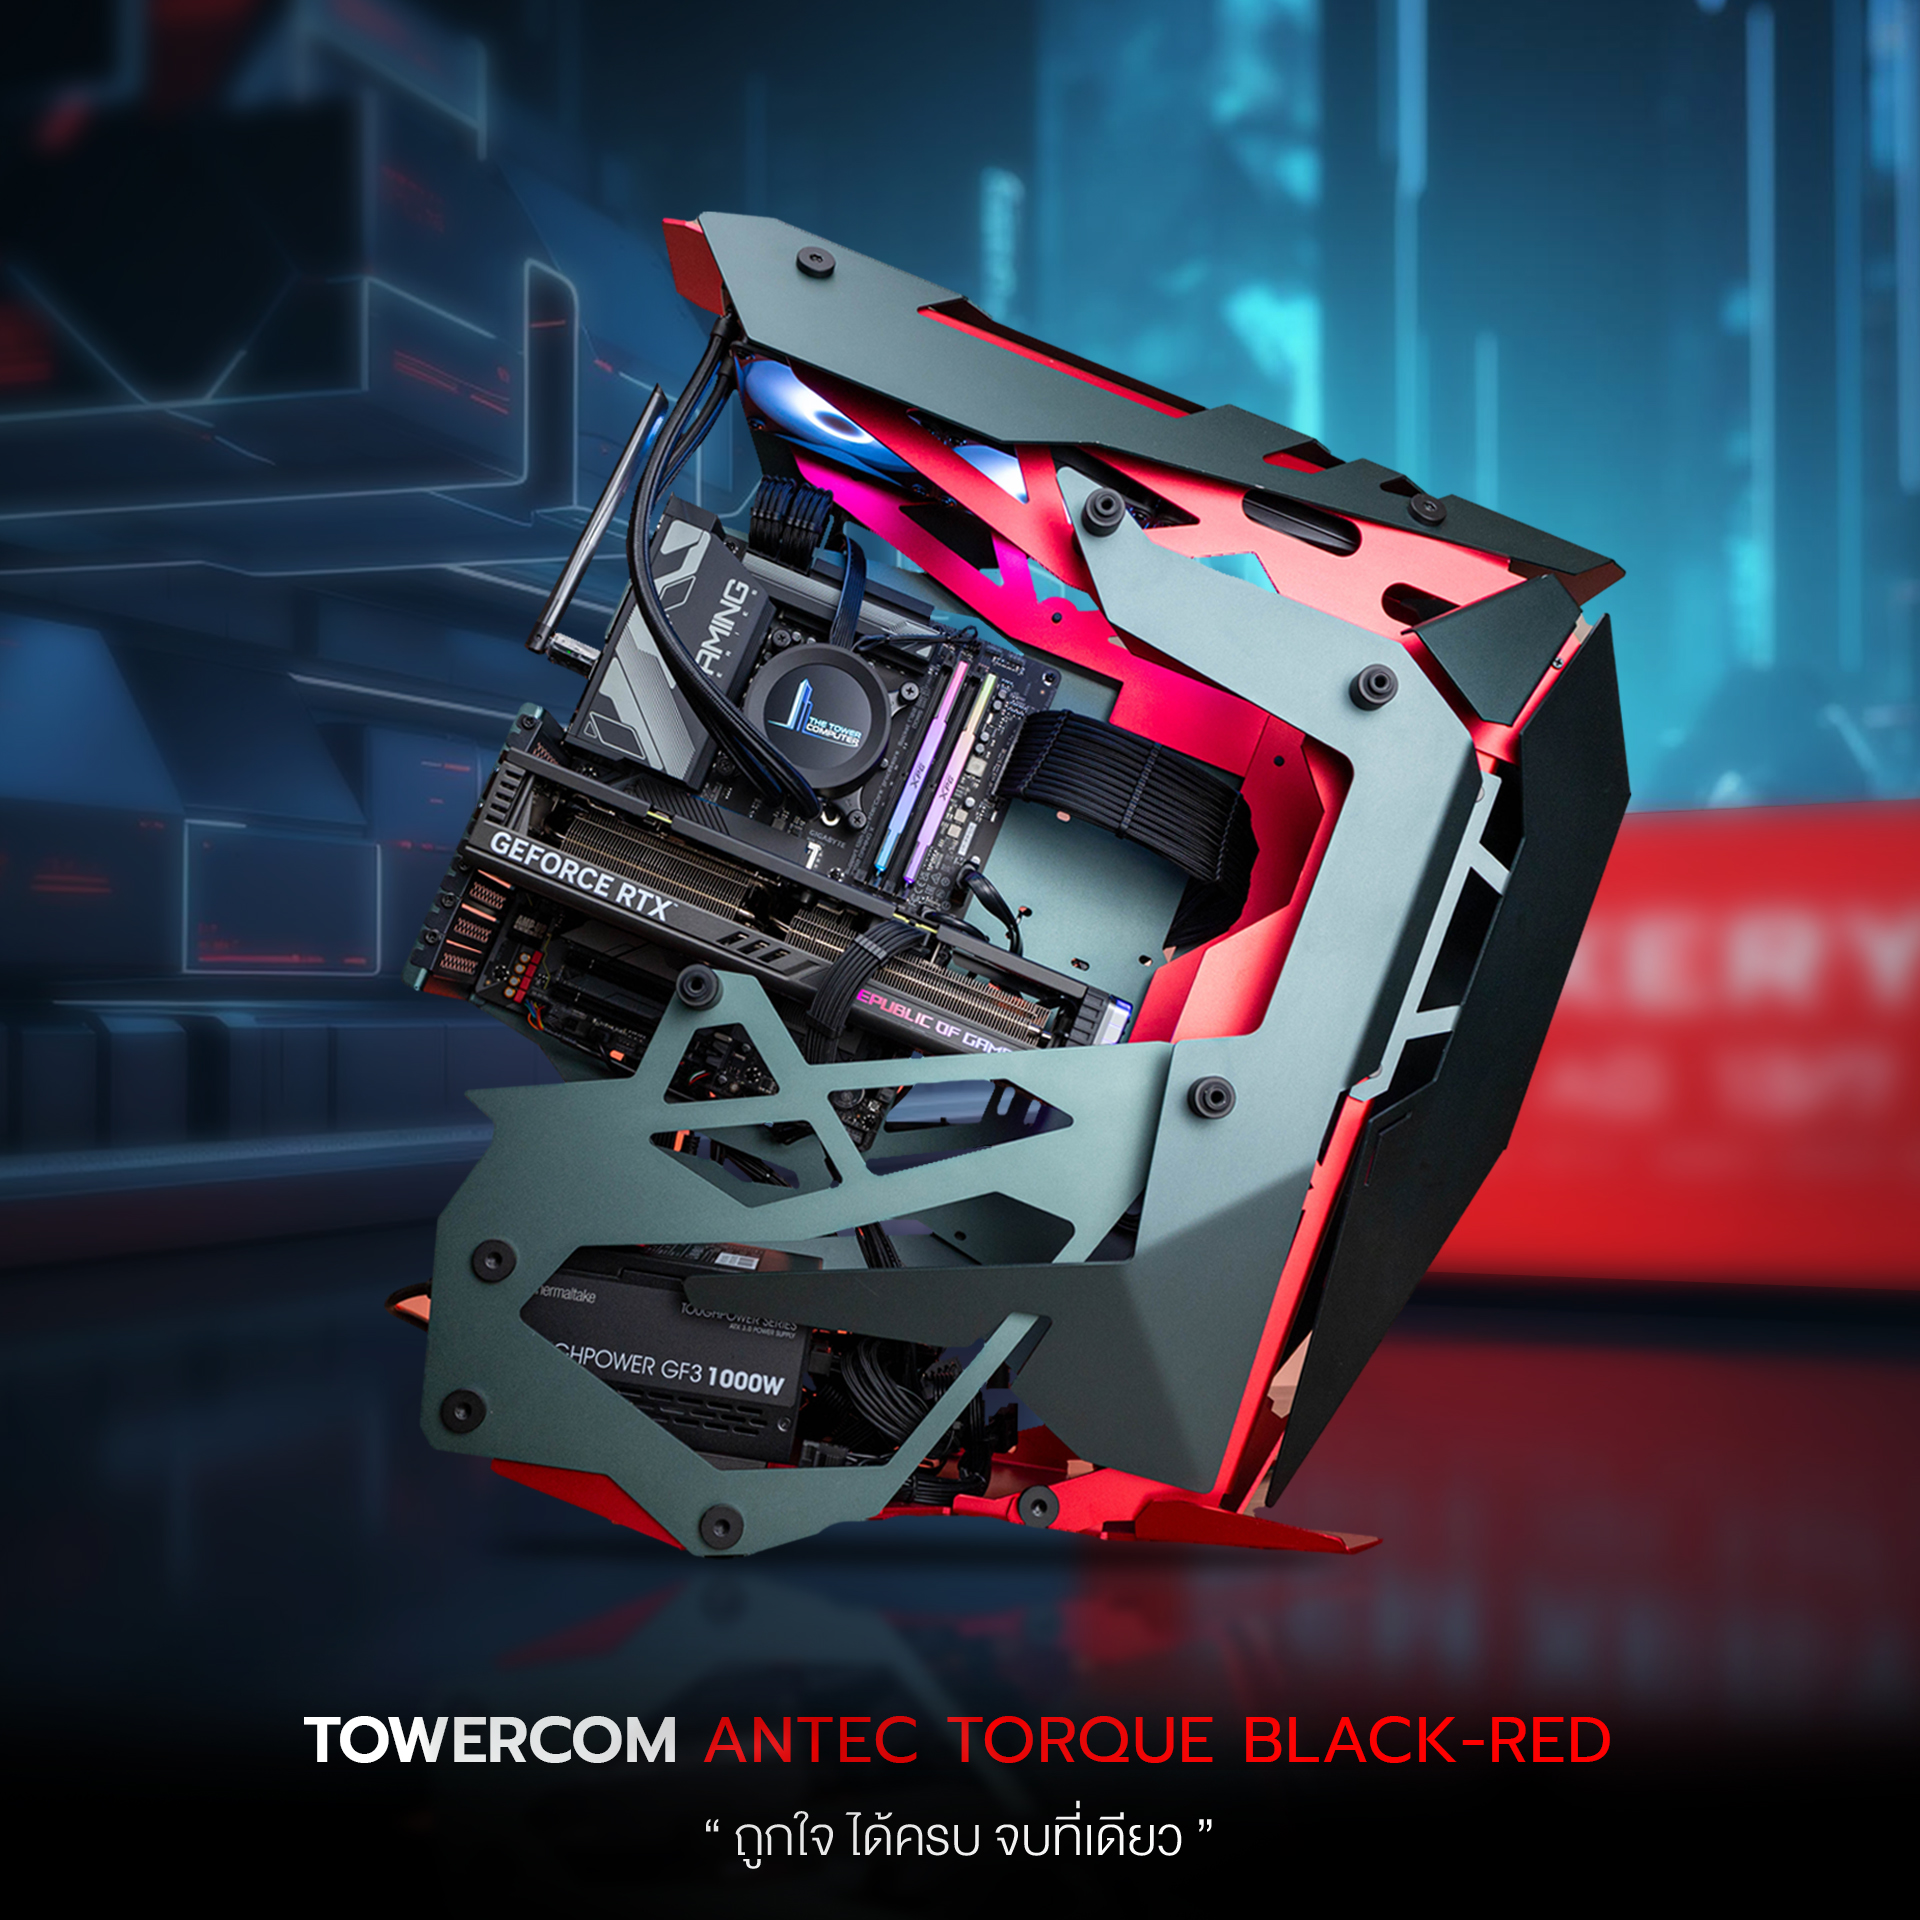 TOWERCOM ANTEC TORQUE BLACK-RED